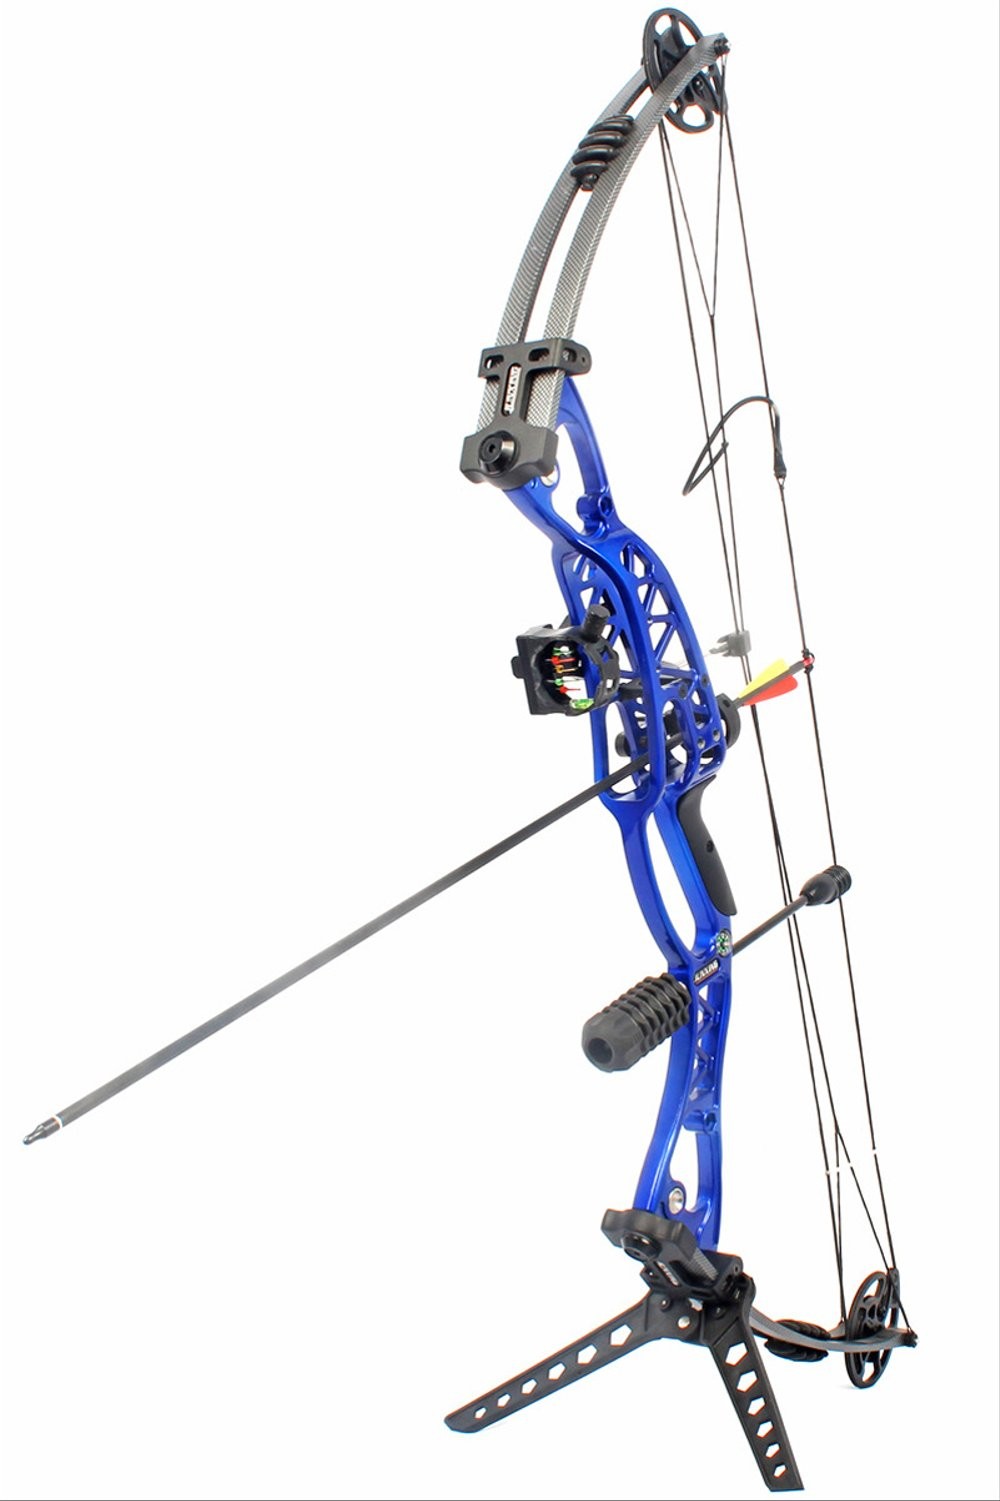 Junxing M106 Compound Bow—Junxing Archery